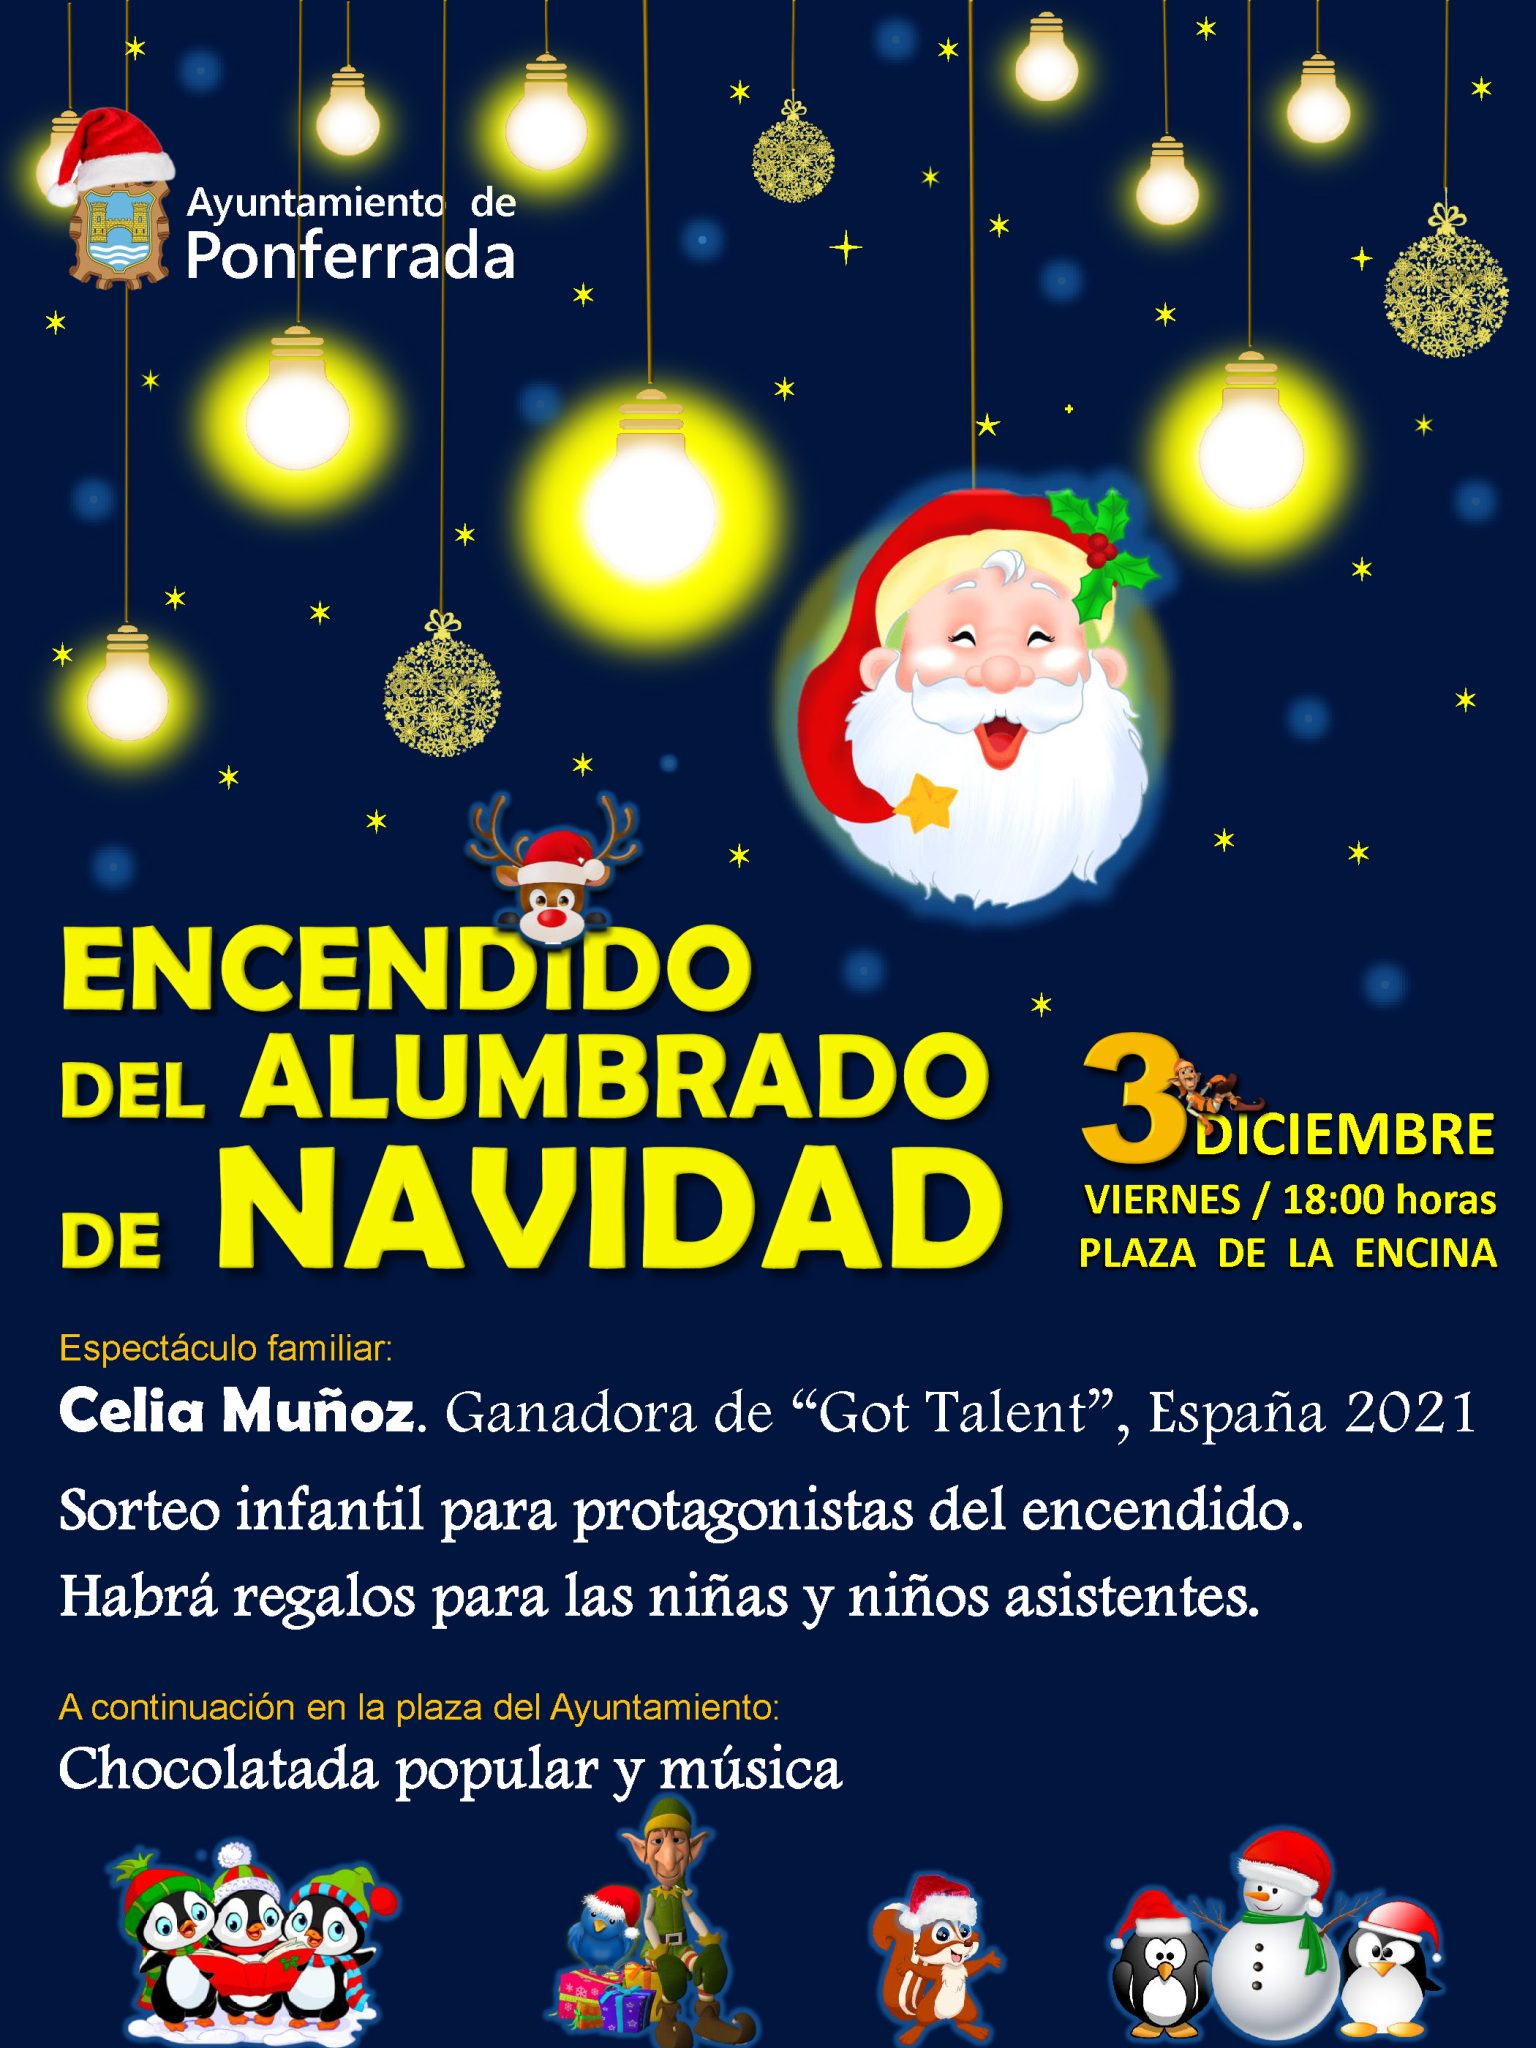 Ponferrada inaugurará la iluminación navideña el 3 de diciembre con actuación y chocolatada en la Plaza del Ayuntamiento 1